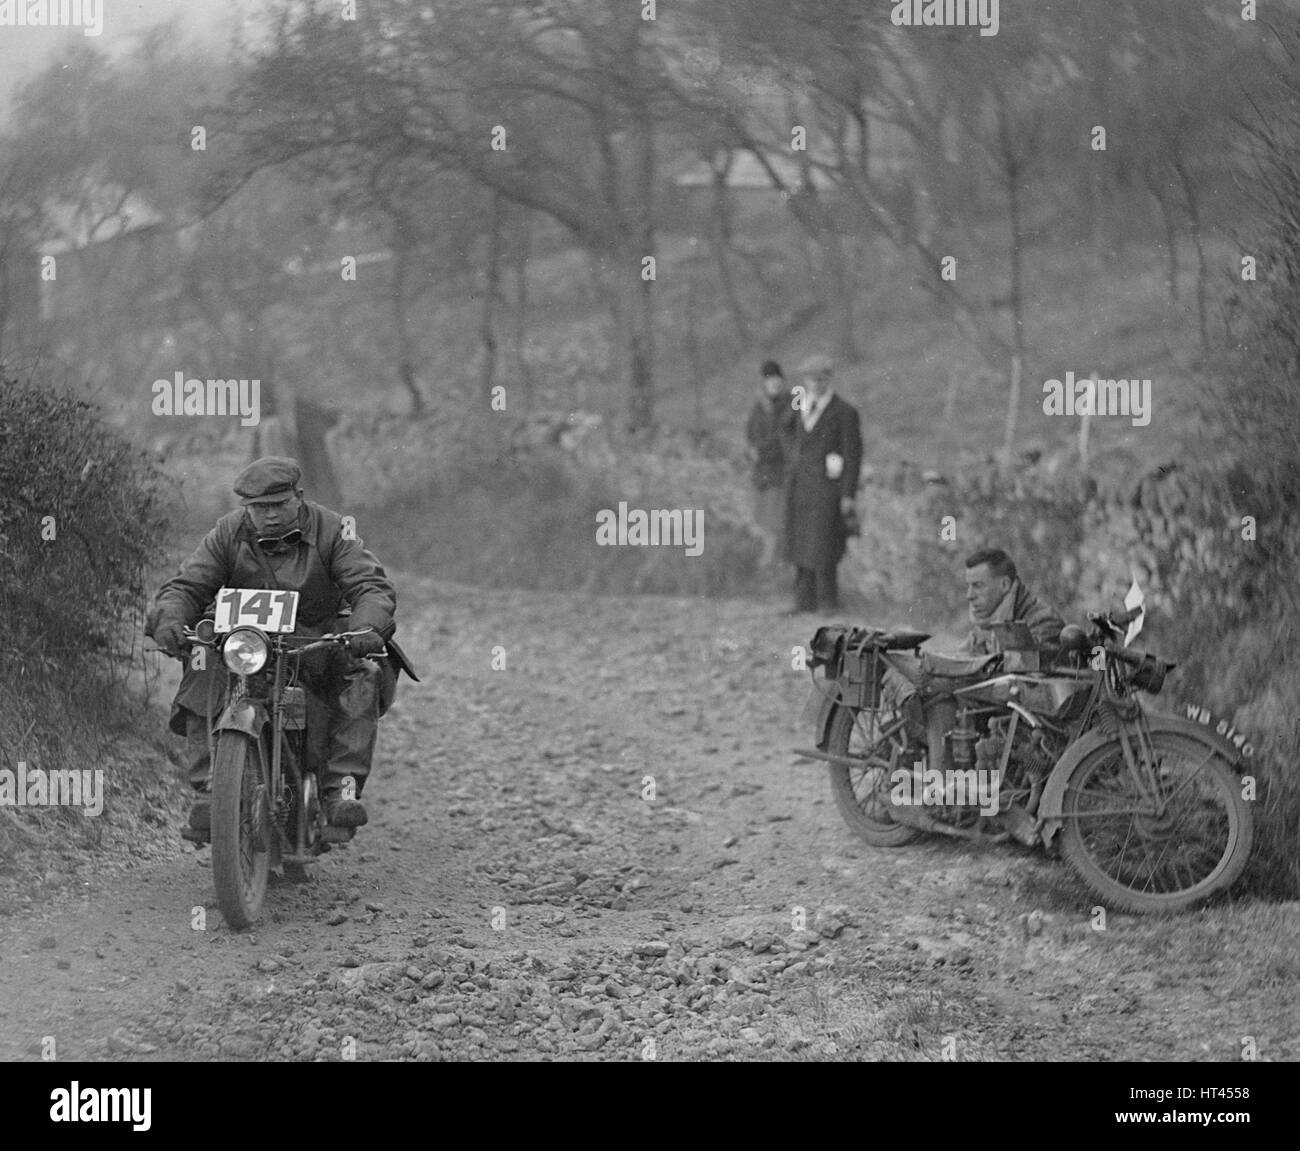 Motocicletta di prendere parte a una prova, c1930s. Artista: Bill Brunell. Foto Stock